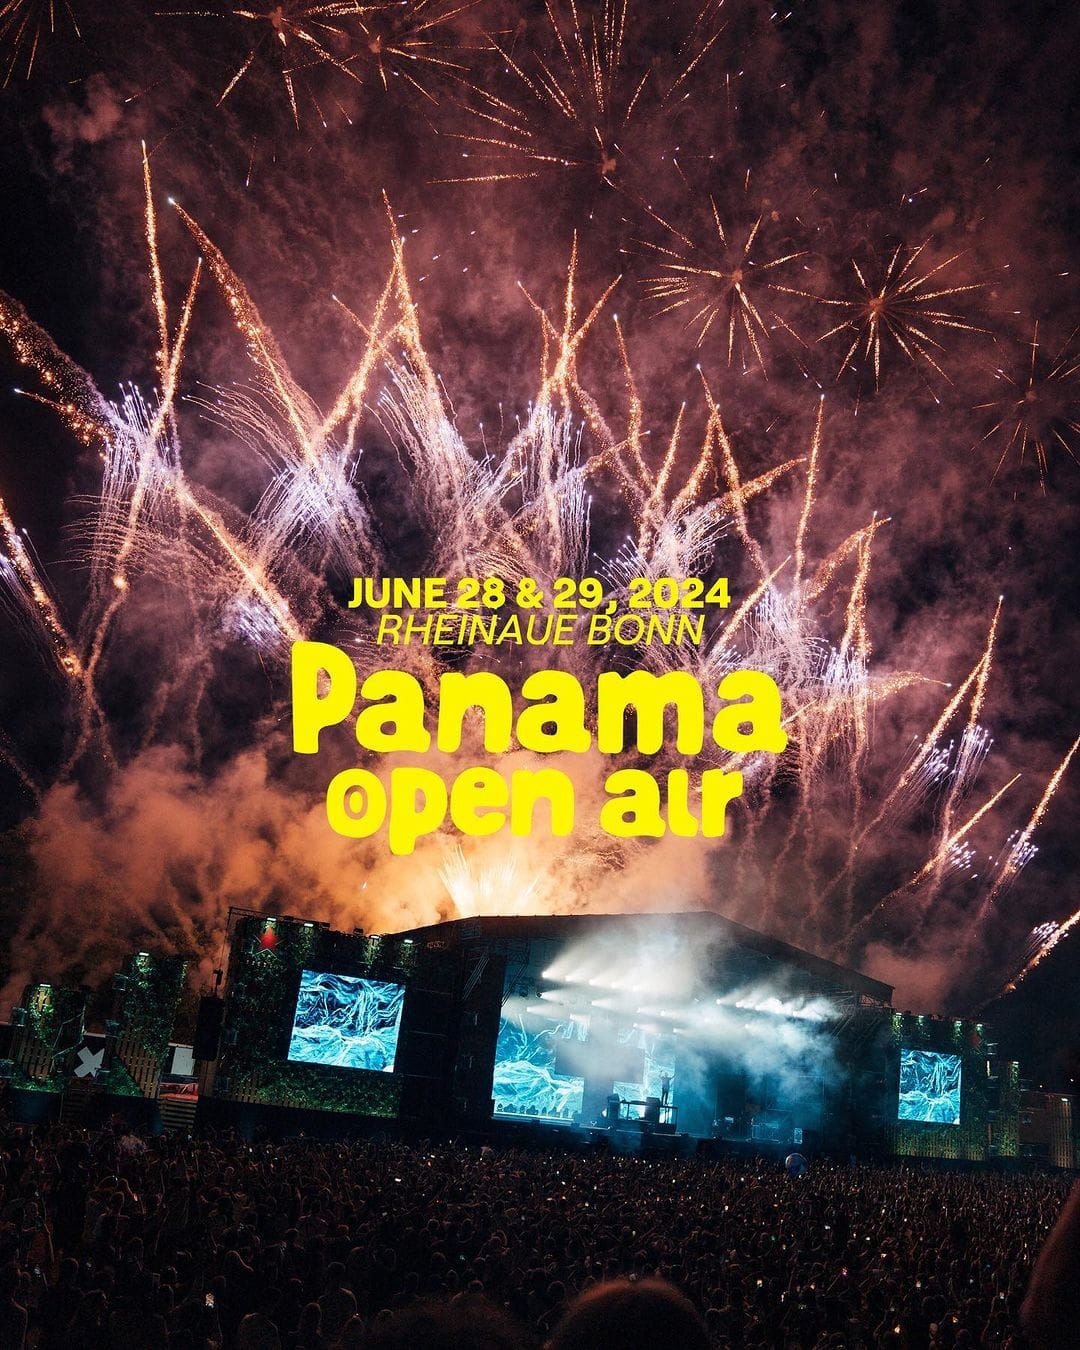 Panama open air 2024 